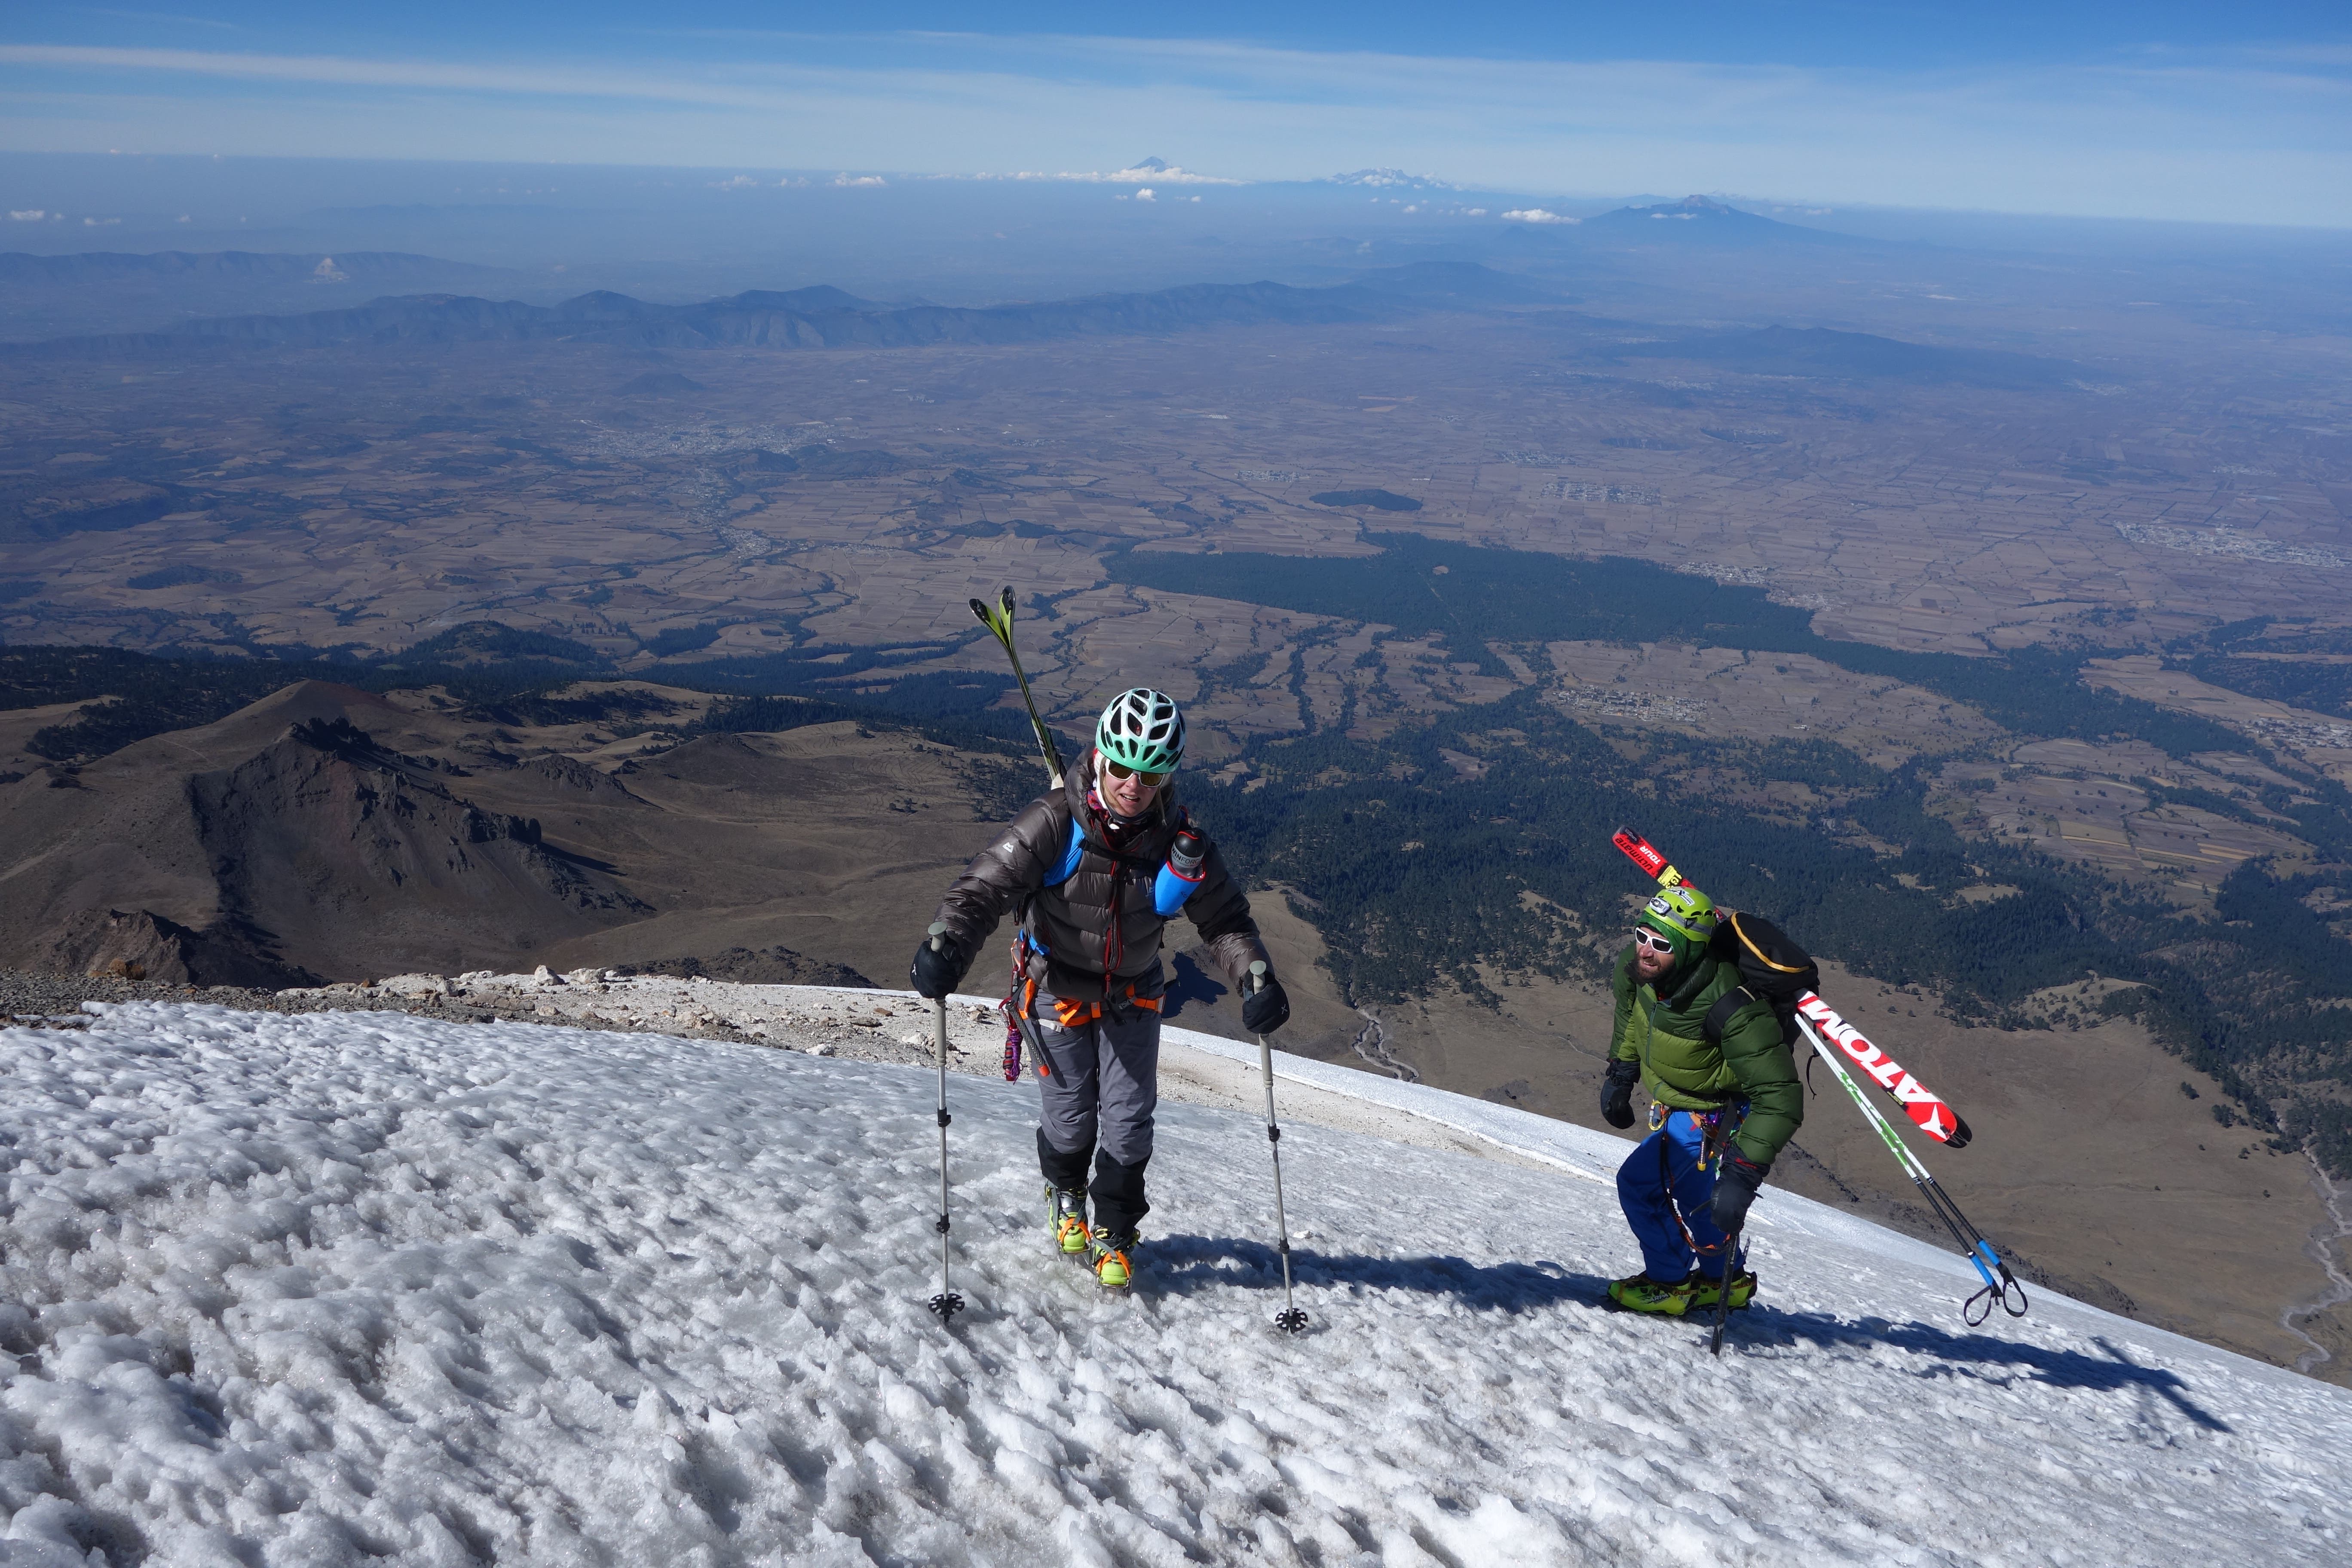 Nachdem es Flammersfeld beim Gipfelaufstieg besser ging, fuhr sie den höchsten Vulkan Nordamerikas, den Pico de Orizaba, auf den Ski hinab.